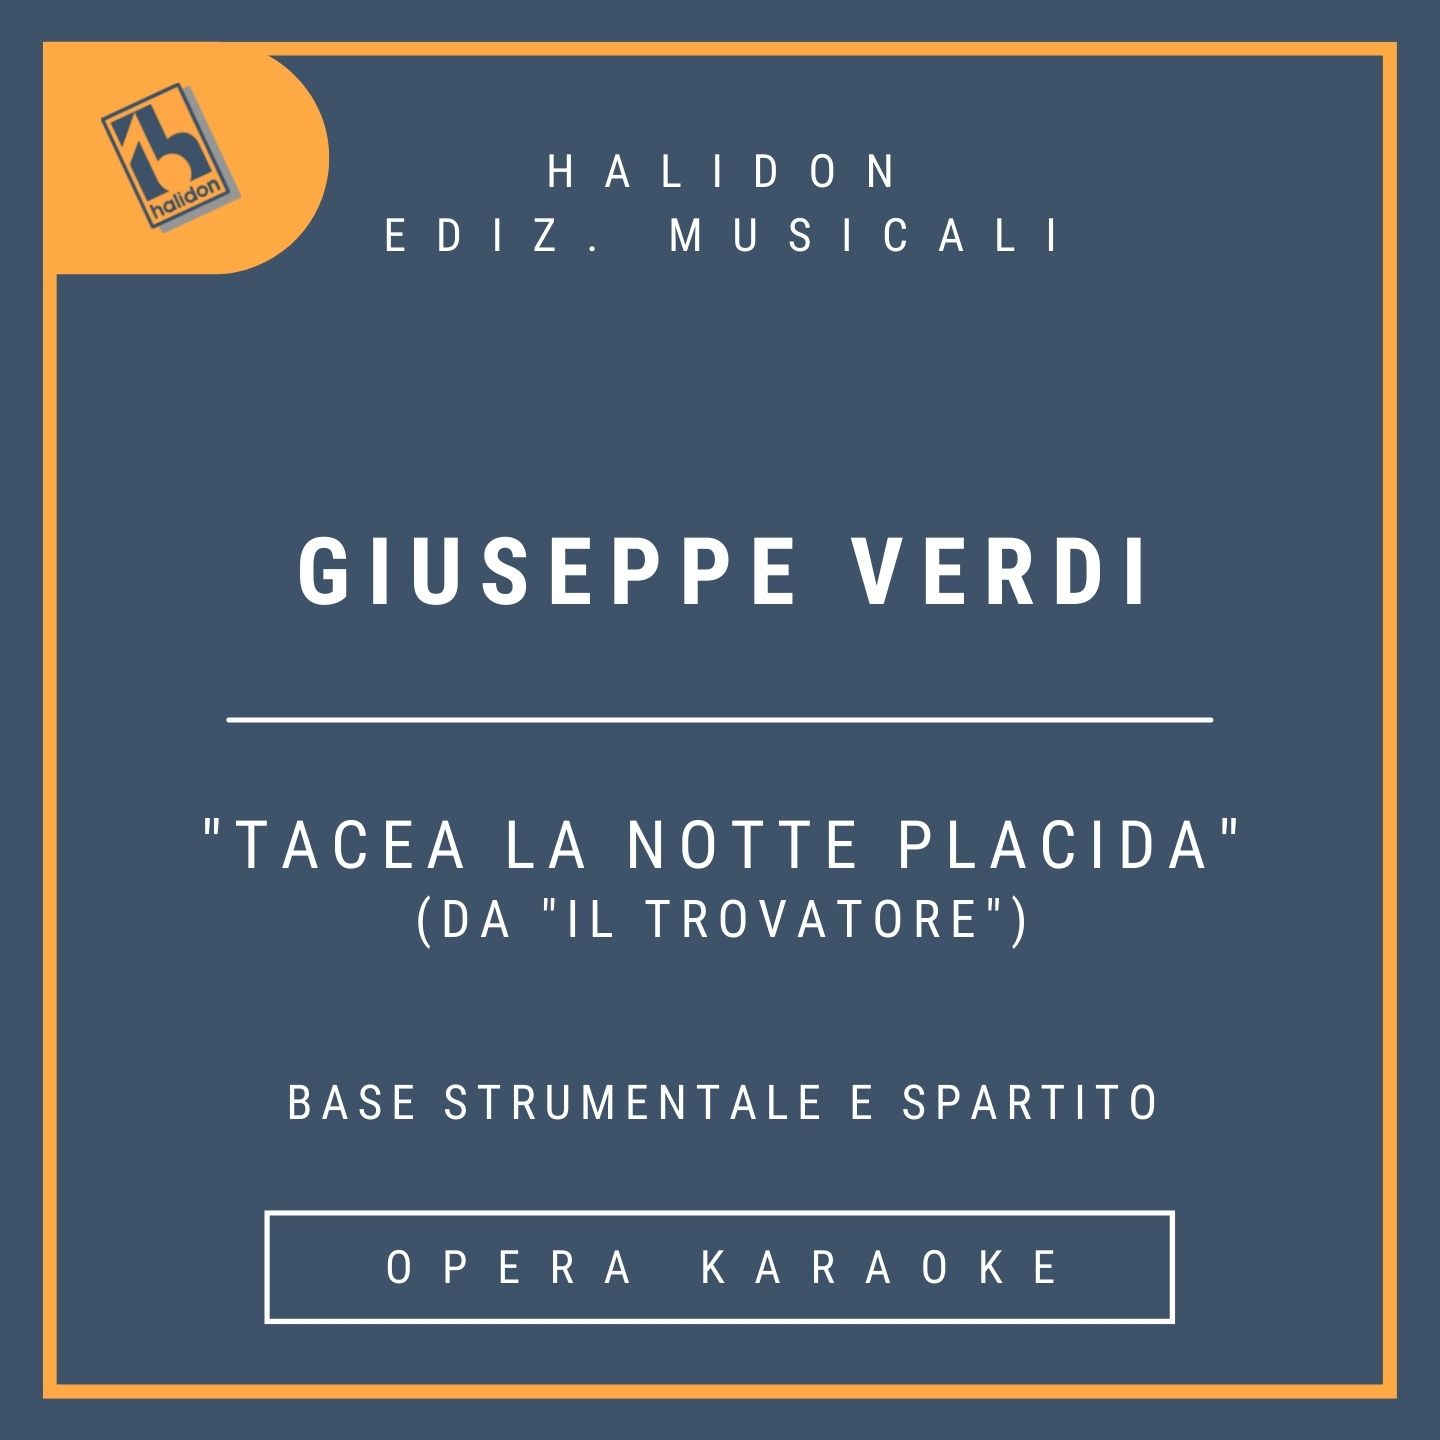 Giuseppe Verdi - Tacea la notte placida (from 'Il Trovatore') - Leonora Scene and Cavatina (dramatic soprano) - Instrumental track + sheet